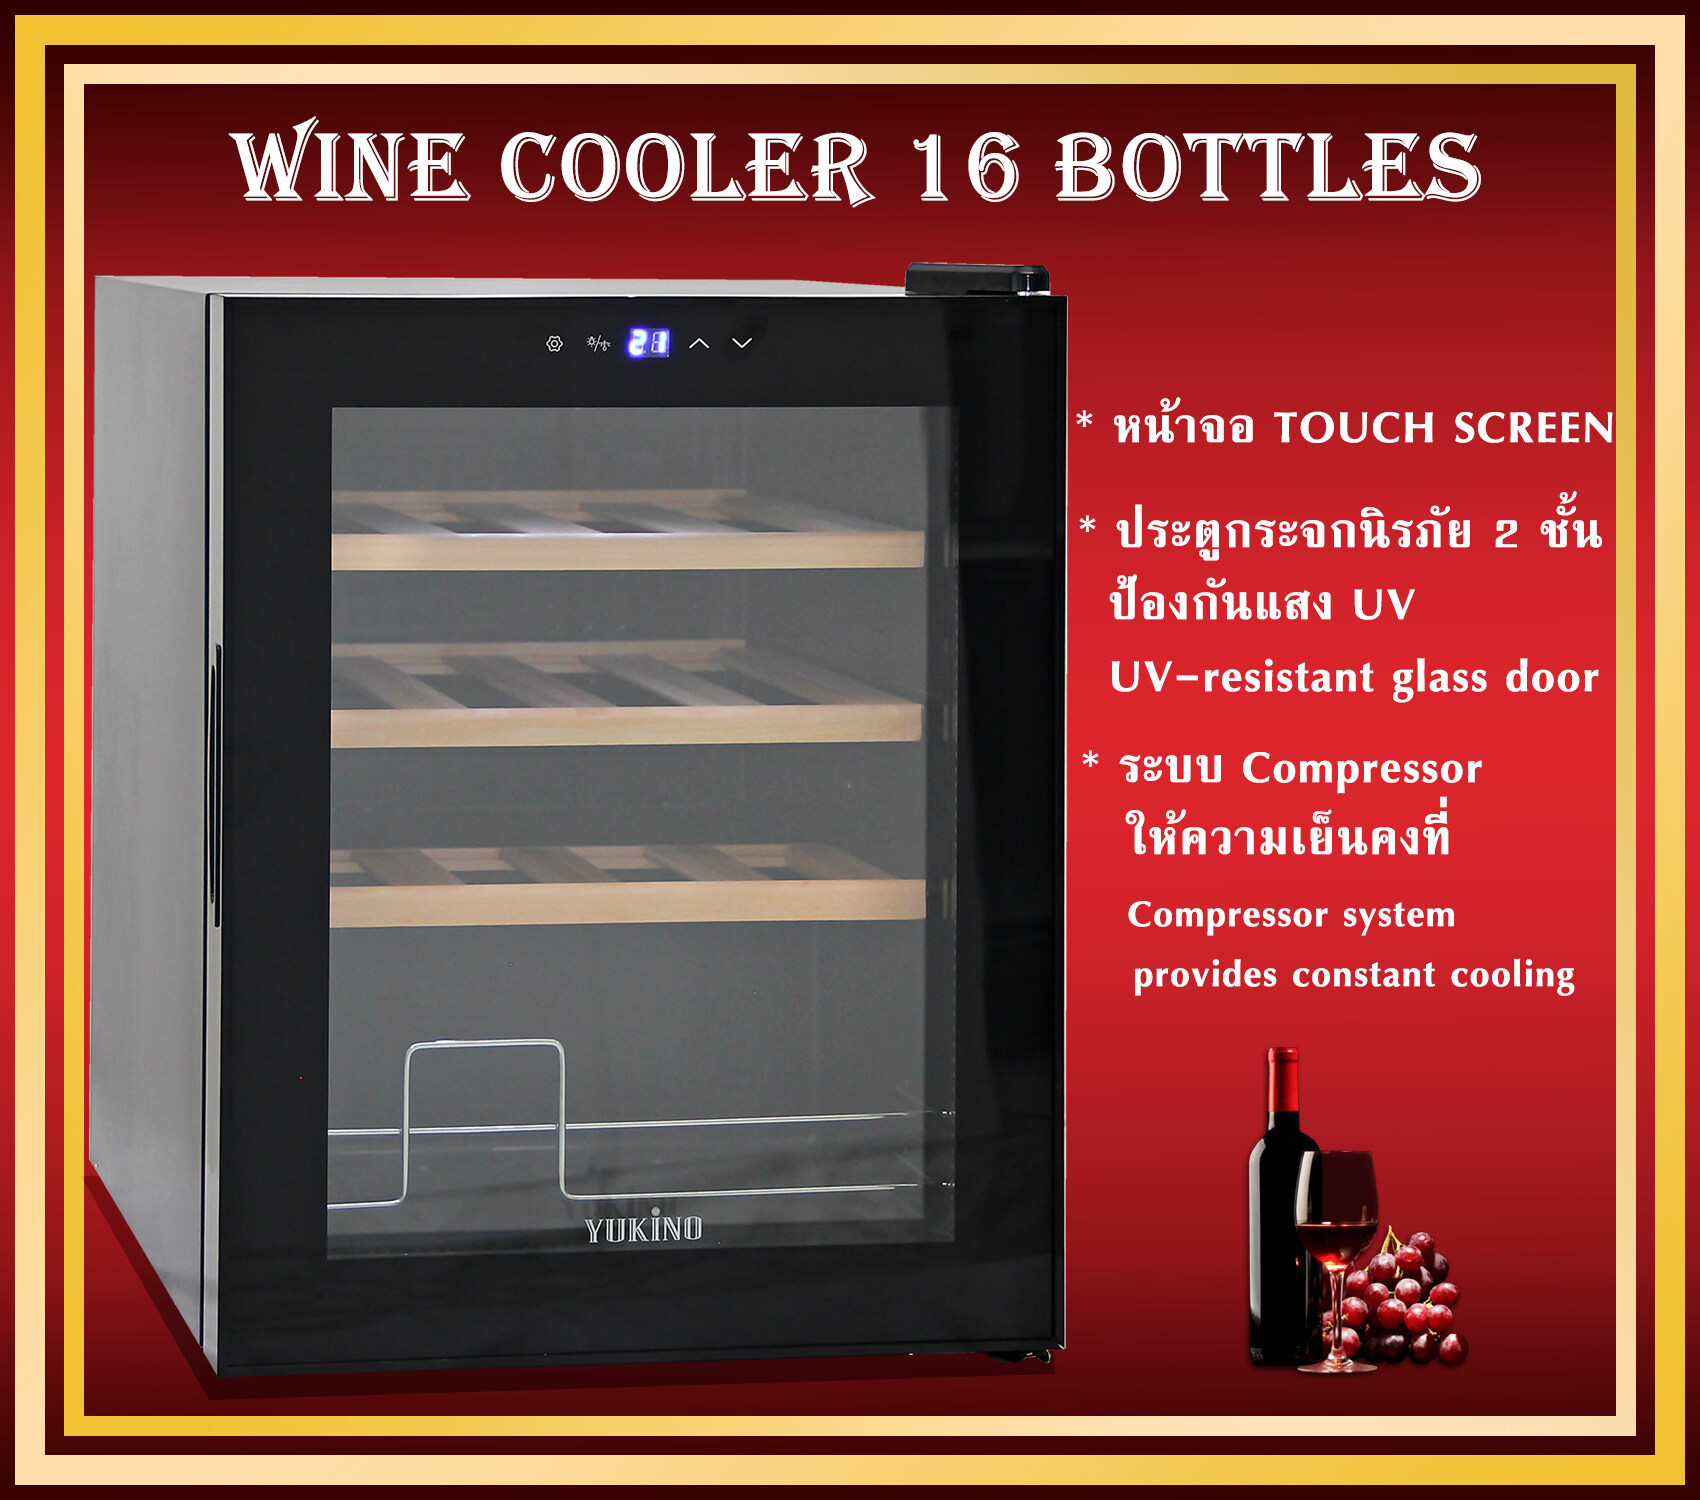 ตู้แช่ ตู้แช่ไวน์  ตู้ไวน์  ตู้แช่ไวน์คุณภาพสูง ตู้เก็บไวน์  16 bottles  Wine cabinet Wine cooler , Wine cellar ขนาดบรรจุ 16 ขวด